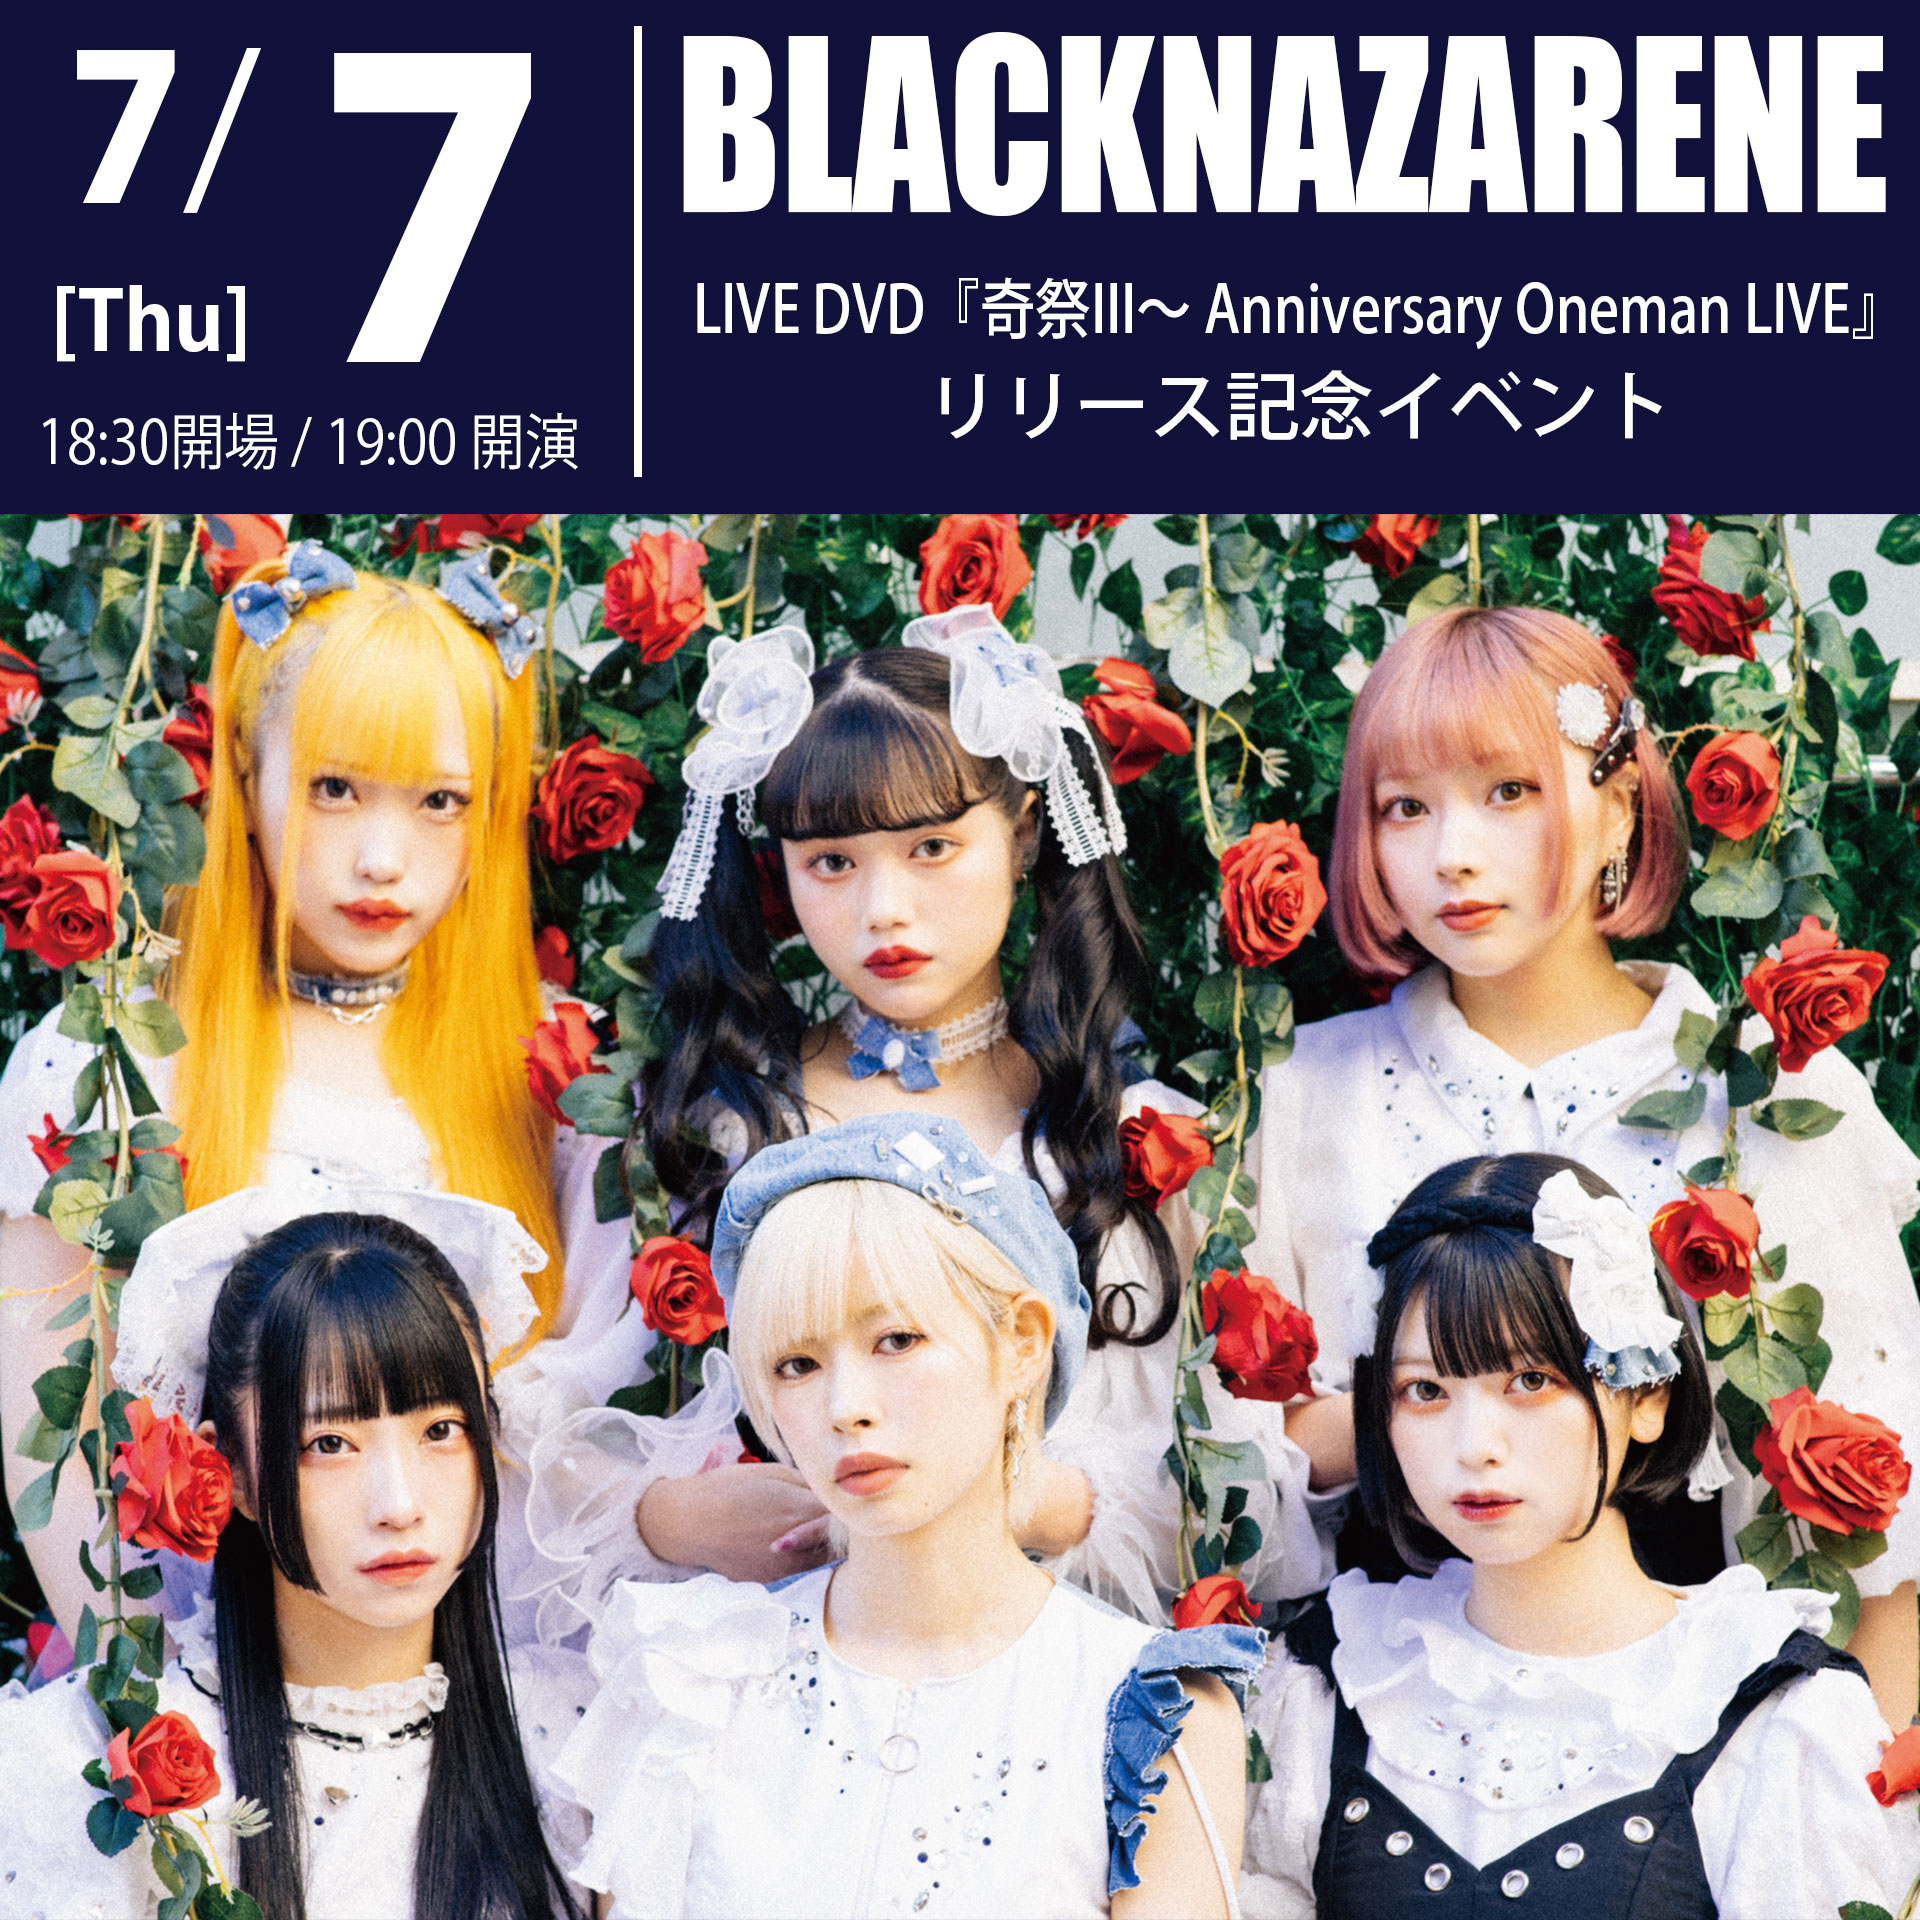 7/7（木）BLACKNAZARENE LIVE DVD『奇祭III～ Anniversary Oneman LIVE』リリース記念イベント